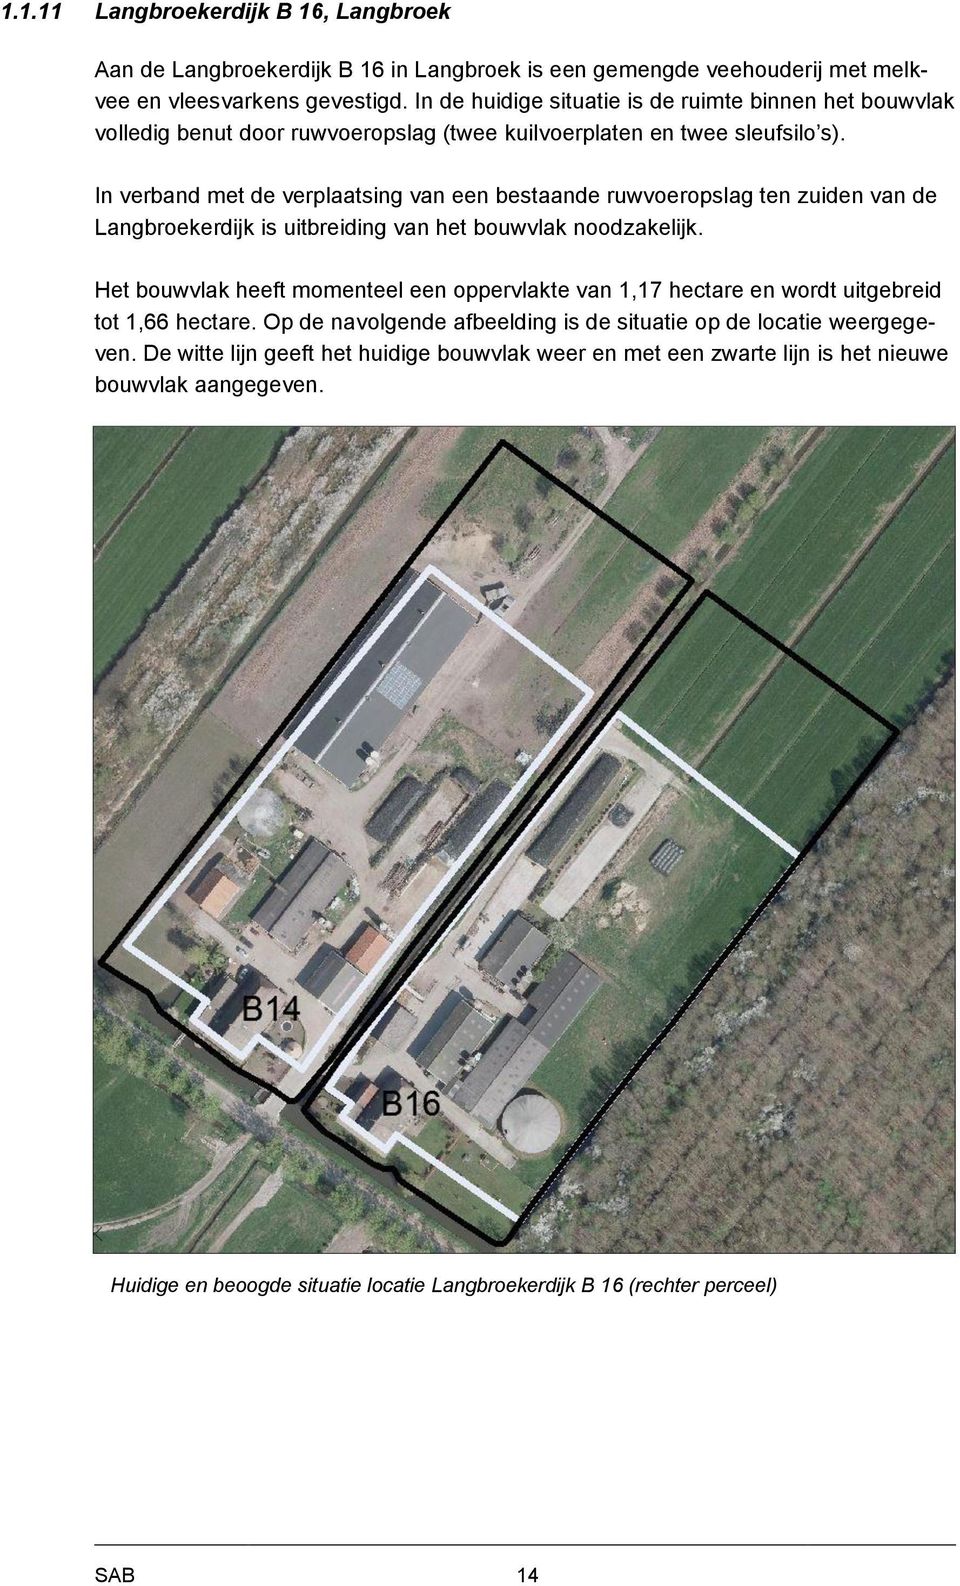 In verband met de verplaatsing van een bestaande ruwvoeropslag ten zuiden van de Langbroekerdijk is uitbreiding van het bouwvlak noodzakelijk.